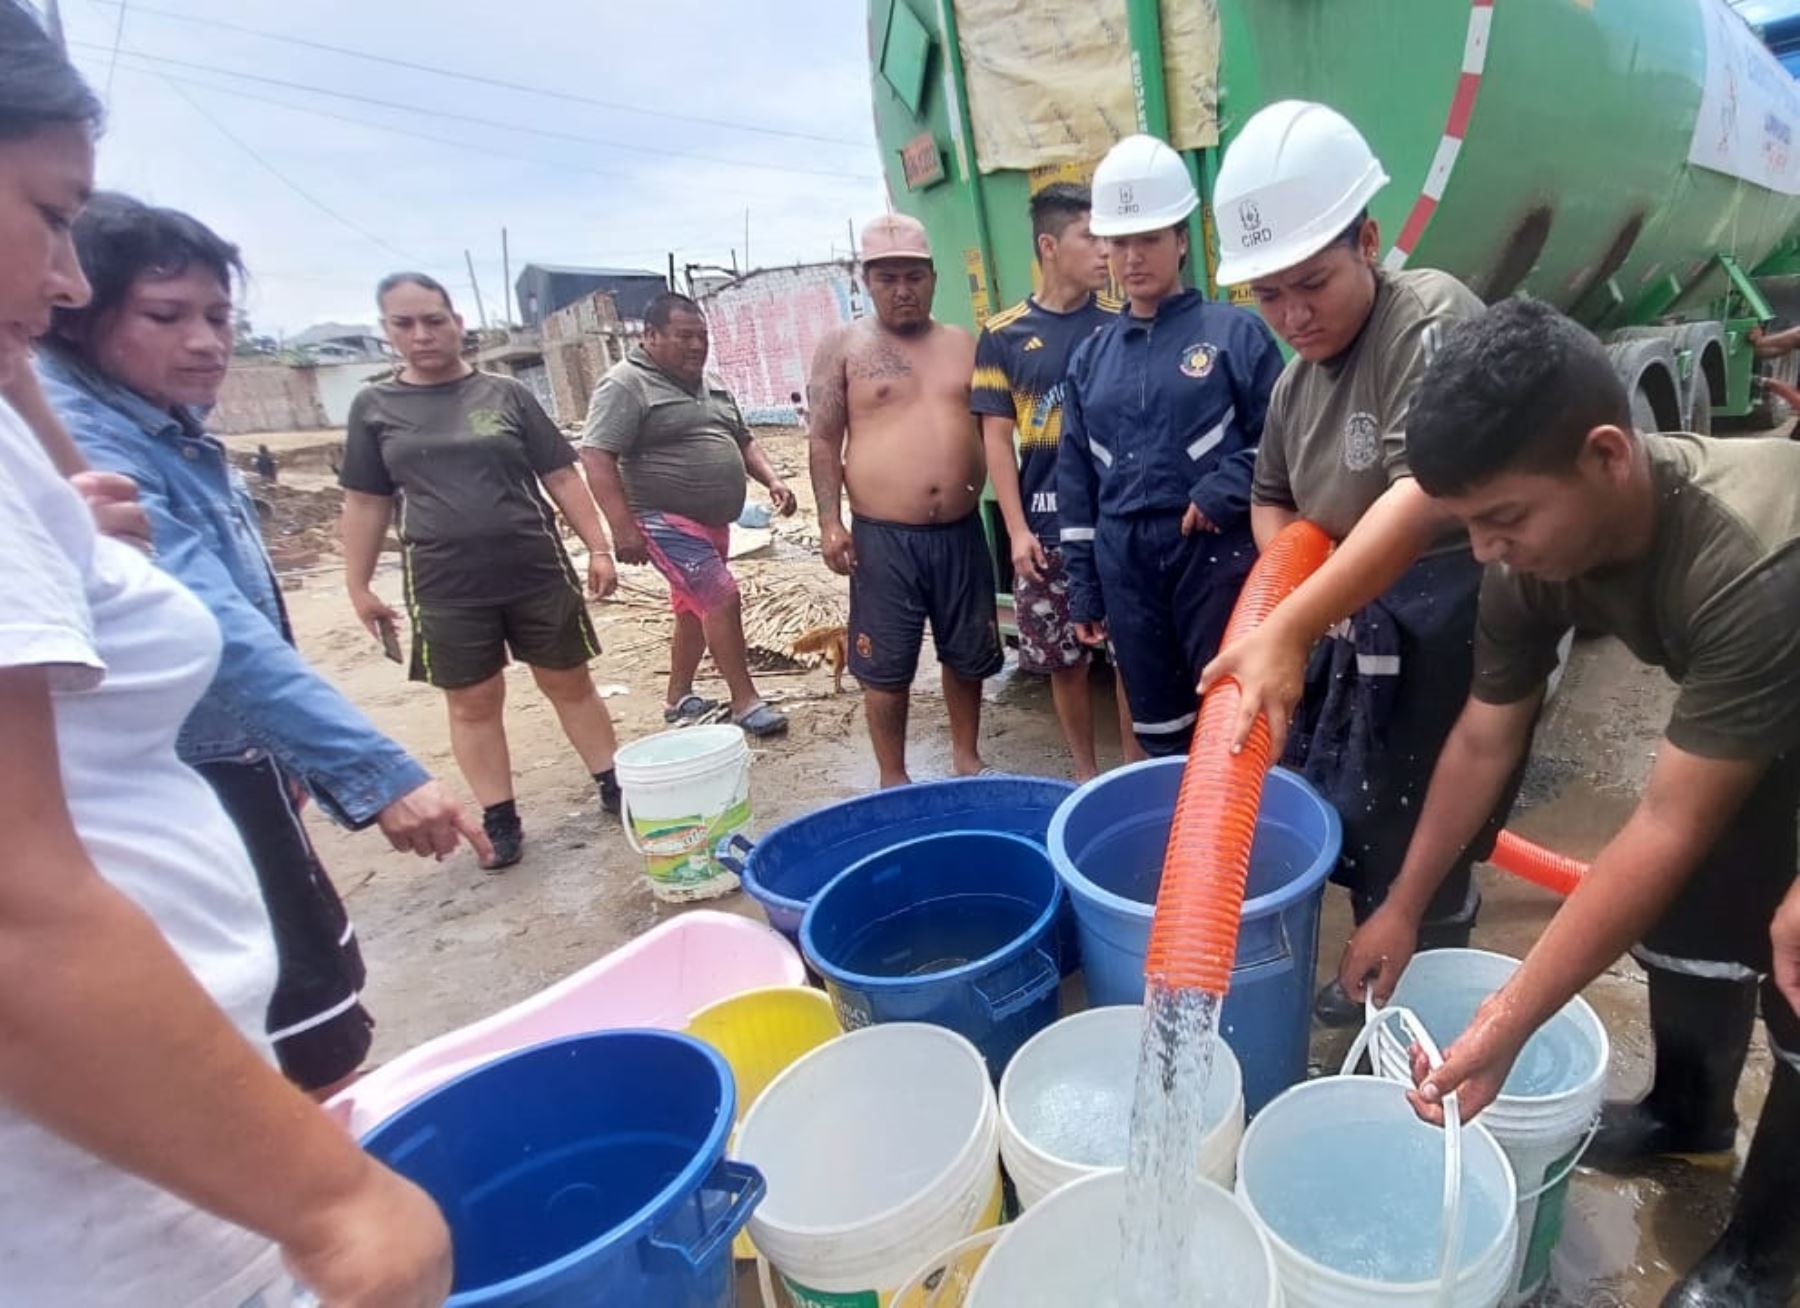 El Ejército participa en la distribución gratuita de agua potable en diversos sectores de Trujillo, mientras cuadrillas de trabajadores aceleran las obras para reparar el canal madre de Chavimochic que sufrió daños severos a causa de las lluvias intensas y huaicos registrados en la zona. Foto: Luis Puell